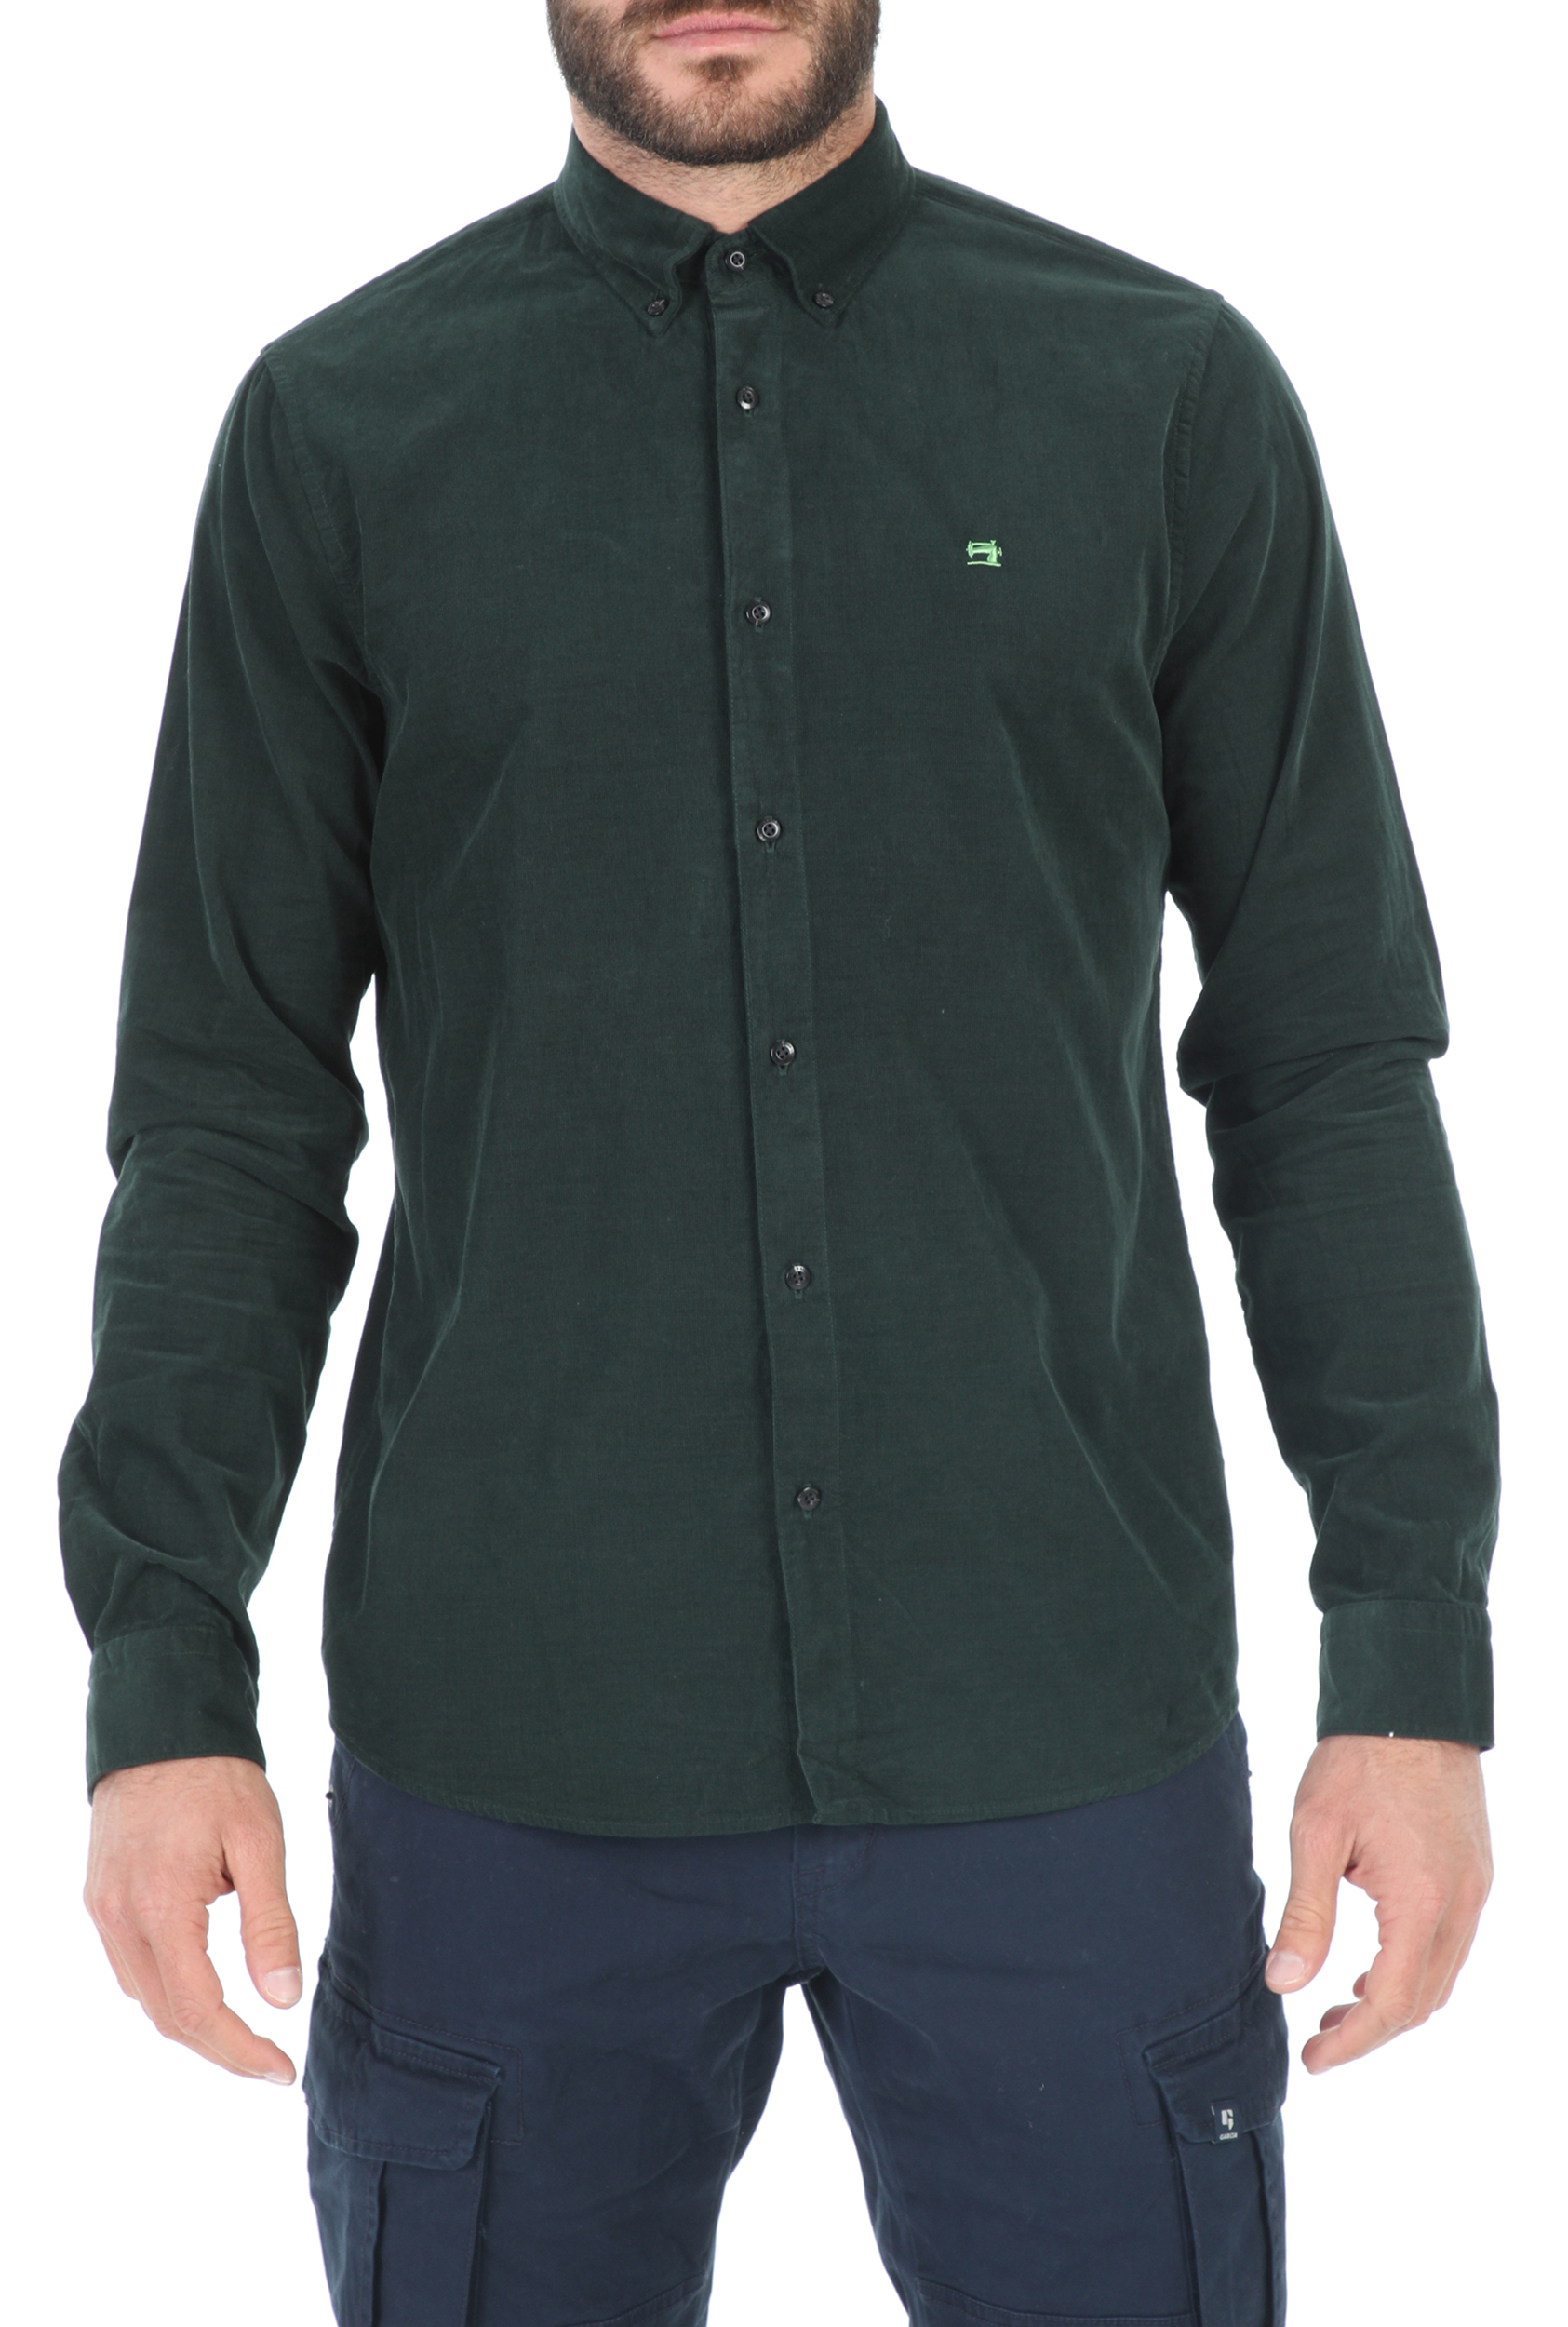 SCOTCH & SODA SCOTCH & SODA - Ανδρικό πουκάμισο SCOTCH & SODA REGULAR FIT πράσινο